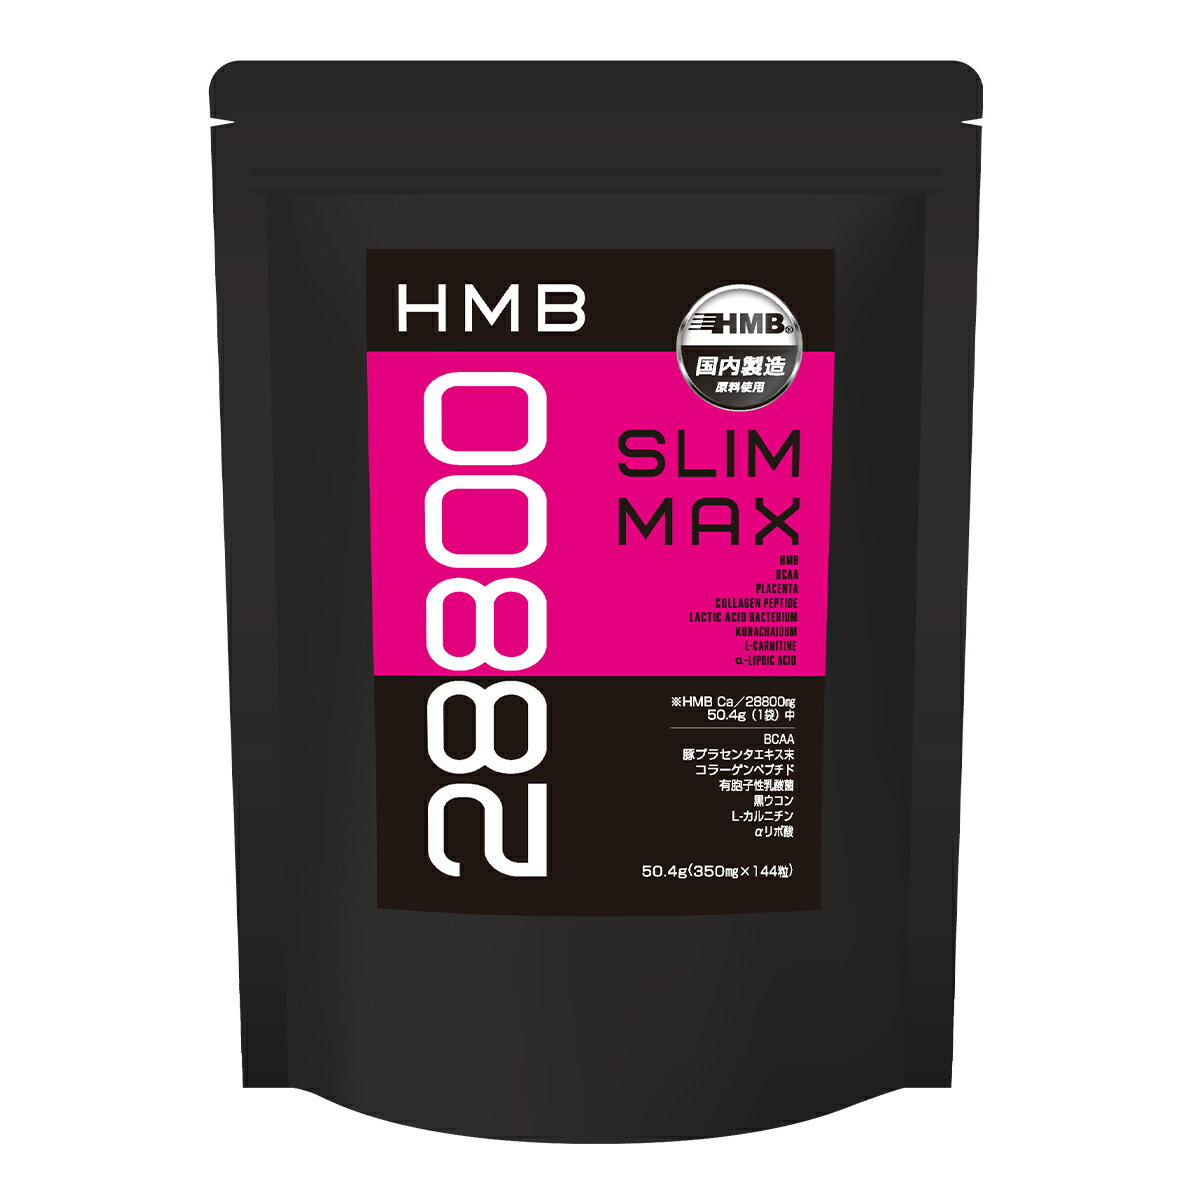 【メール便・定形外郵便のご注意】 宅配便に比べ、到着までお時間をいただきます。 又、紛失・破損・遅延等についての補償はございません。予めご了承くださいませ。 【商品名】HMB slim MAX 名称：HMBカルシウム含有加工食品 原材料名：HMBカルシウム（国内製造）、豚胎盤抽出物、コラーゲンペプチド、黒生姜末、L-カルニチンL-酒石酸塩、α-リポ酸、有胞子性乳酸菌、/結晶セルロース、貝殻未焼成カルシウム、ステアリン酸カルシウム、微粒二酸化ケイ素、L-ロイシン、L-バリン、L-イソロイシン、ヒマワリレシチン（一部に豚肉・ゼラチンを含む） 内容量：50.4g（350mg×144粒） 保存方法：直射日光、高温多湿を避けて冷暗所に保存してください。 販売者：株式会社シーデイ 【栄養成分表示　12粒（4.2g）当たり】 ※数値は、サンプル品分析による推定値です。 エネルギー／13.87kcal　たんぱく質／0.02g　脂質／0.16g　炭水化物／3.06g　食塩相当量／0.03g 【お召し上がり方】 栄養補助食品として1日あたり12粒を目安にお召し上がり下さい。かまずに水やぬるま湯などでお飲み下さい。 【ご注意】 ●原材料表示をご確認のうえ食物アレルギーのある方はお召し上がりにならないでください。 ●原材料に天然物由来成分を使用しているため、色・におい・味などにばらつきが生じる場合があります。 ●体質やその日の体調によりまれに合わない場合があります。その場合は使用を中止してください。 ●妊娠中・授乳中、またお薬を服用中・通院中の方は医師・薬剤師にご相談のうえご利用ください。 ●保存は高温多湿を避け、開封後はチャックをしっかり閉めてお早めにお召し上がりください。 ●お子様の手の届かないところに保管してください。 ●1日の目安量を基準に過剰摂取にならないようご注意ください。 ●本品の製造設備は、乳、小麦、卵、落花生、えび、かに、豚及び表示を奨励されるアレルギー物質を原材料とした製品にも使用しています。 食生活は、主食、主菜、副菜を基本に、食事のバランスを。